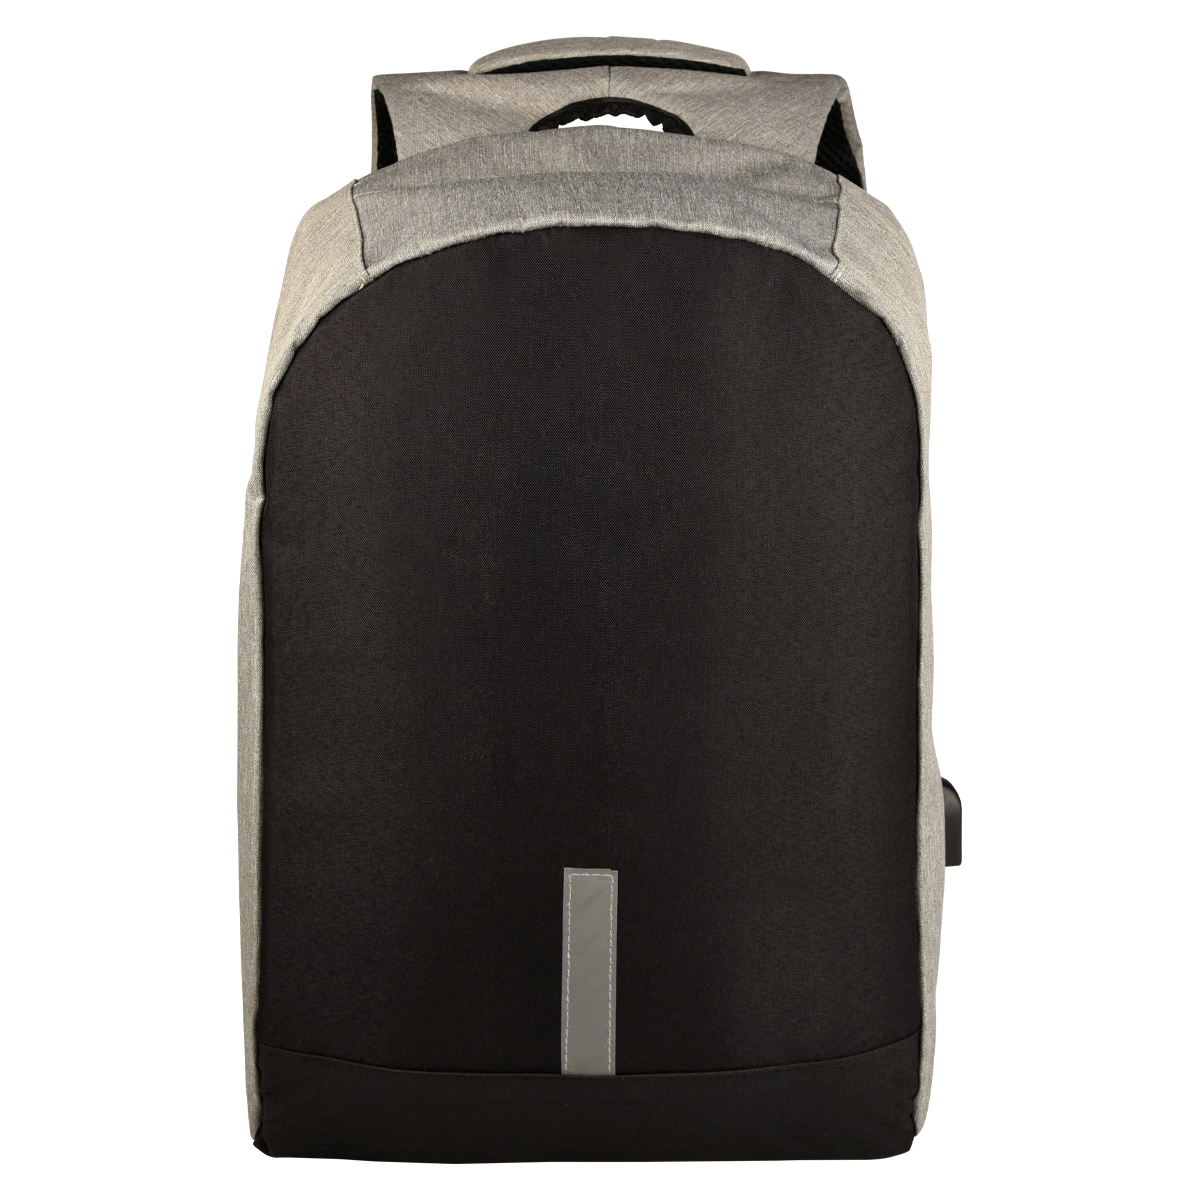 Alabama Laptop Backpack Product Image